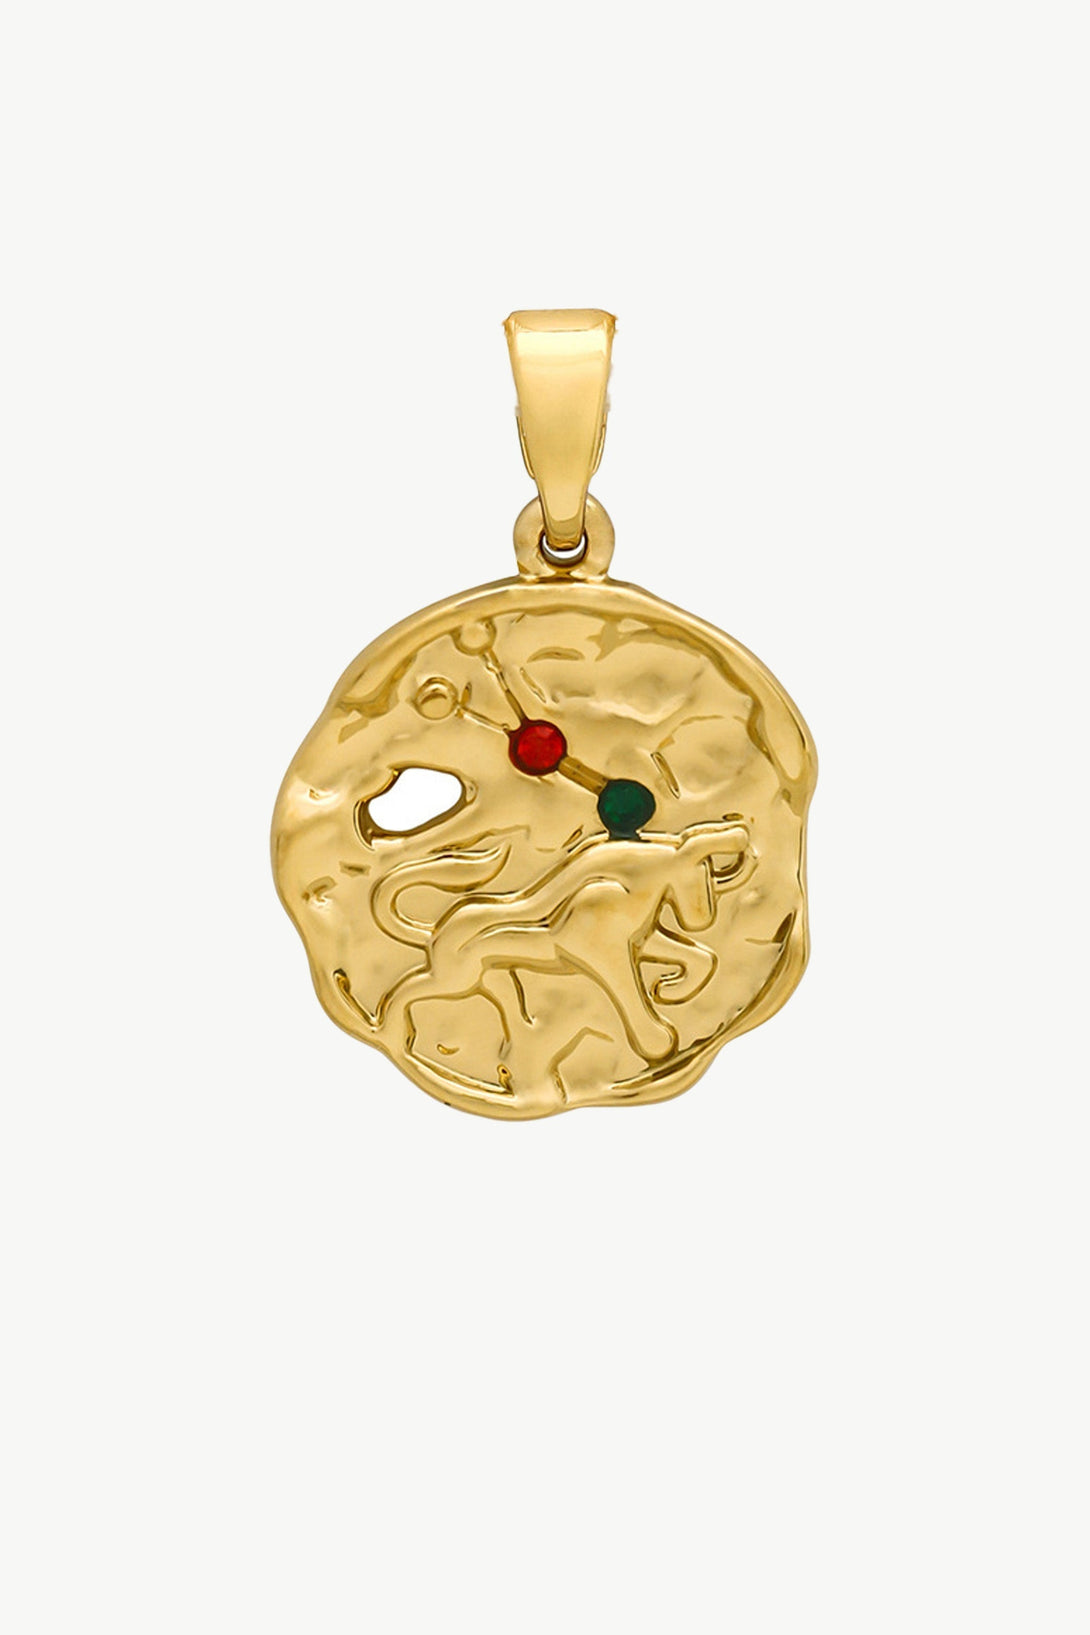 Gold Sculptural Zodiac Sign Pendant Necklace Set - Classicharms